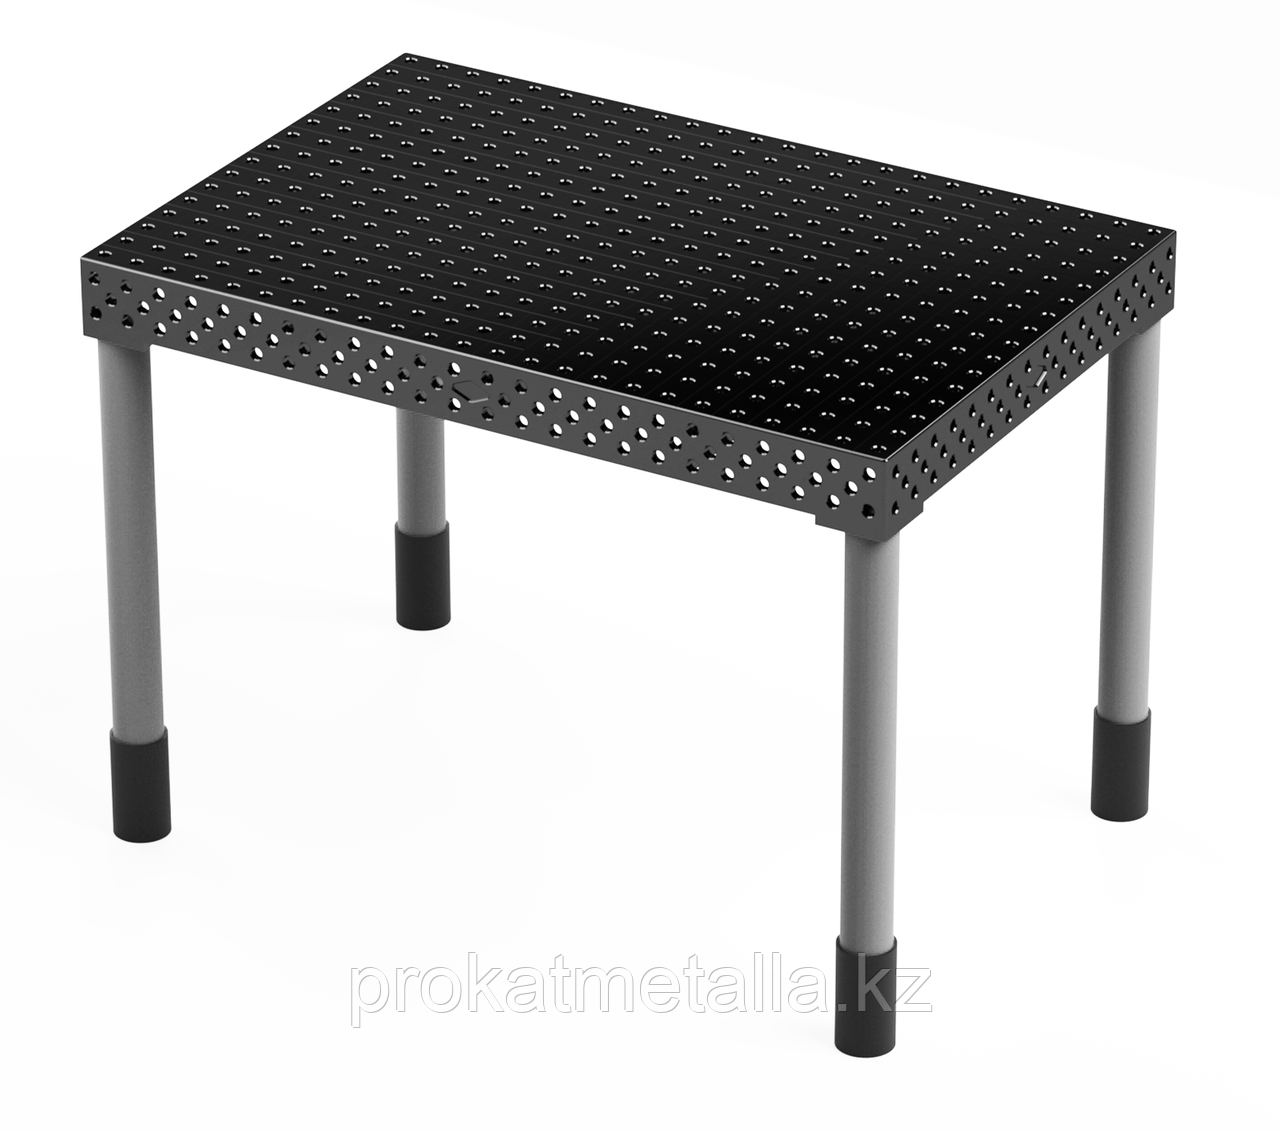 Сварочный стол "Стандарт" 1000х1000х150 (шаг 100 мм)